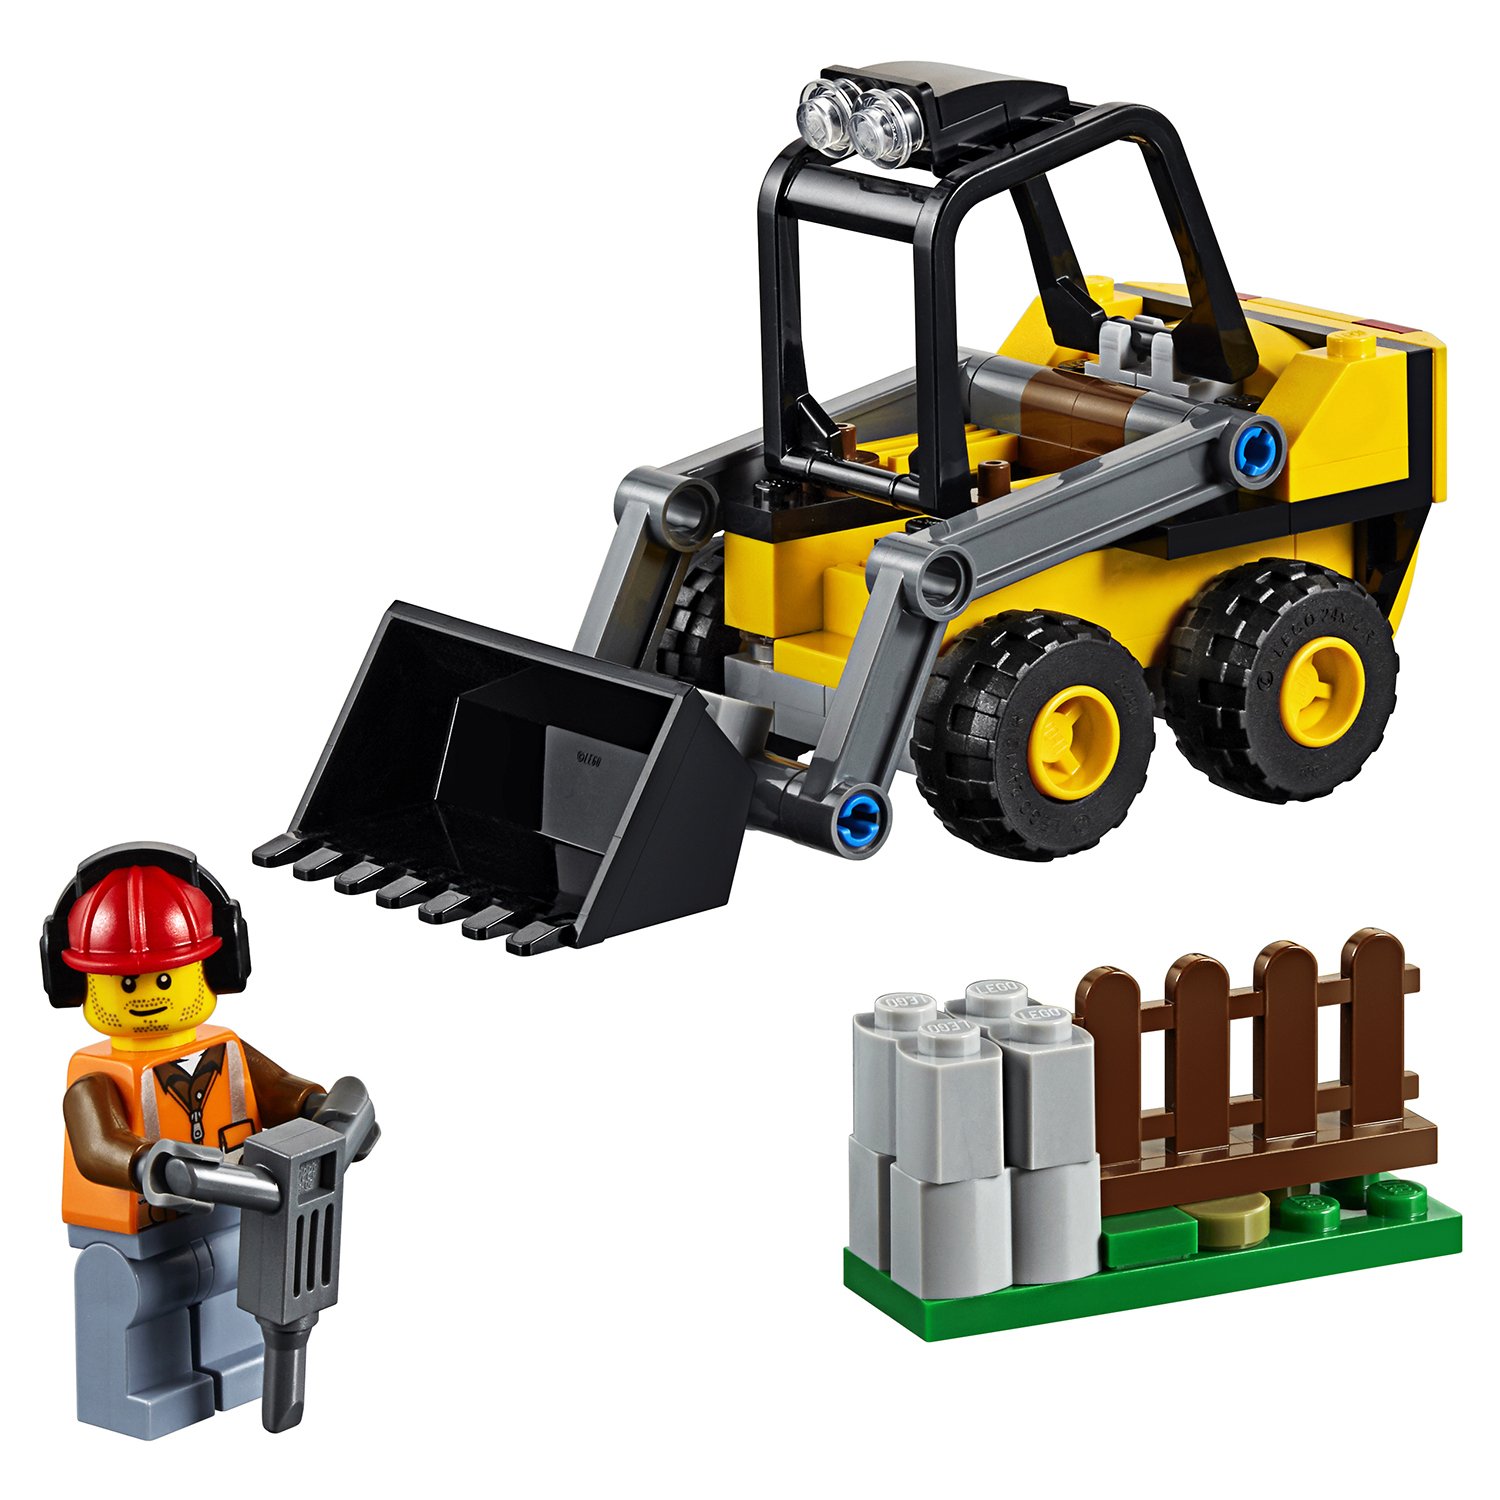 Lego City 60219 Строительный погрузчик